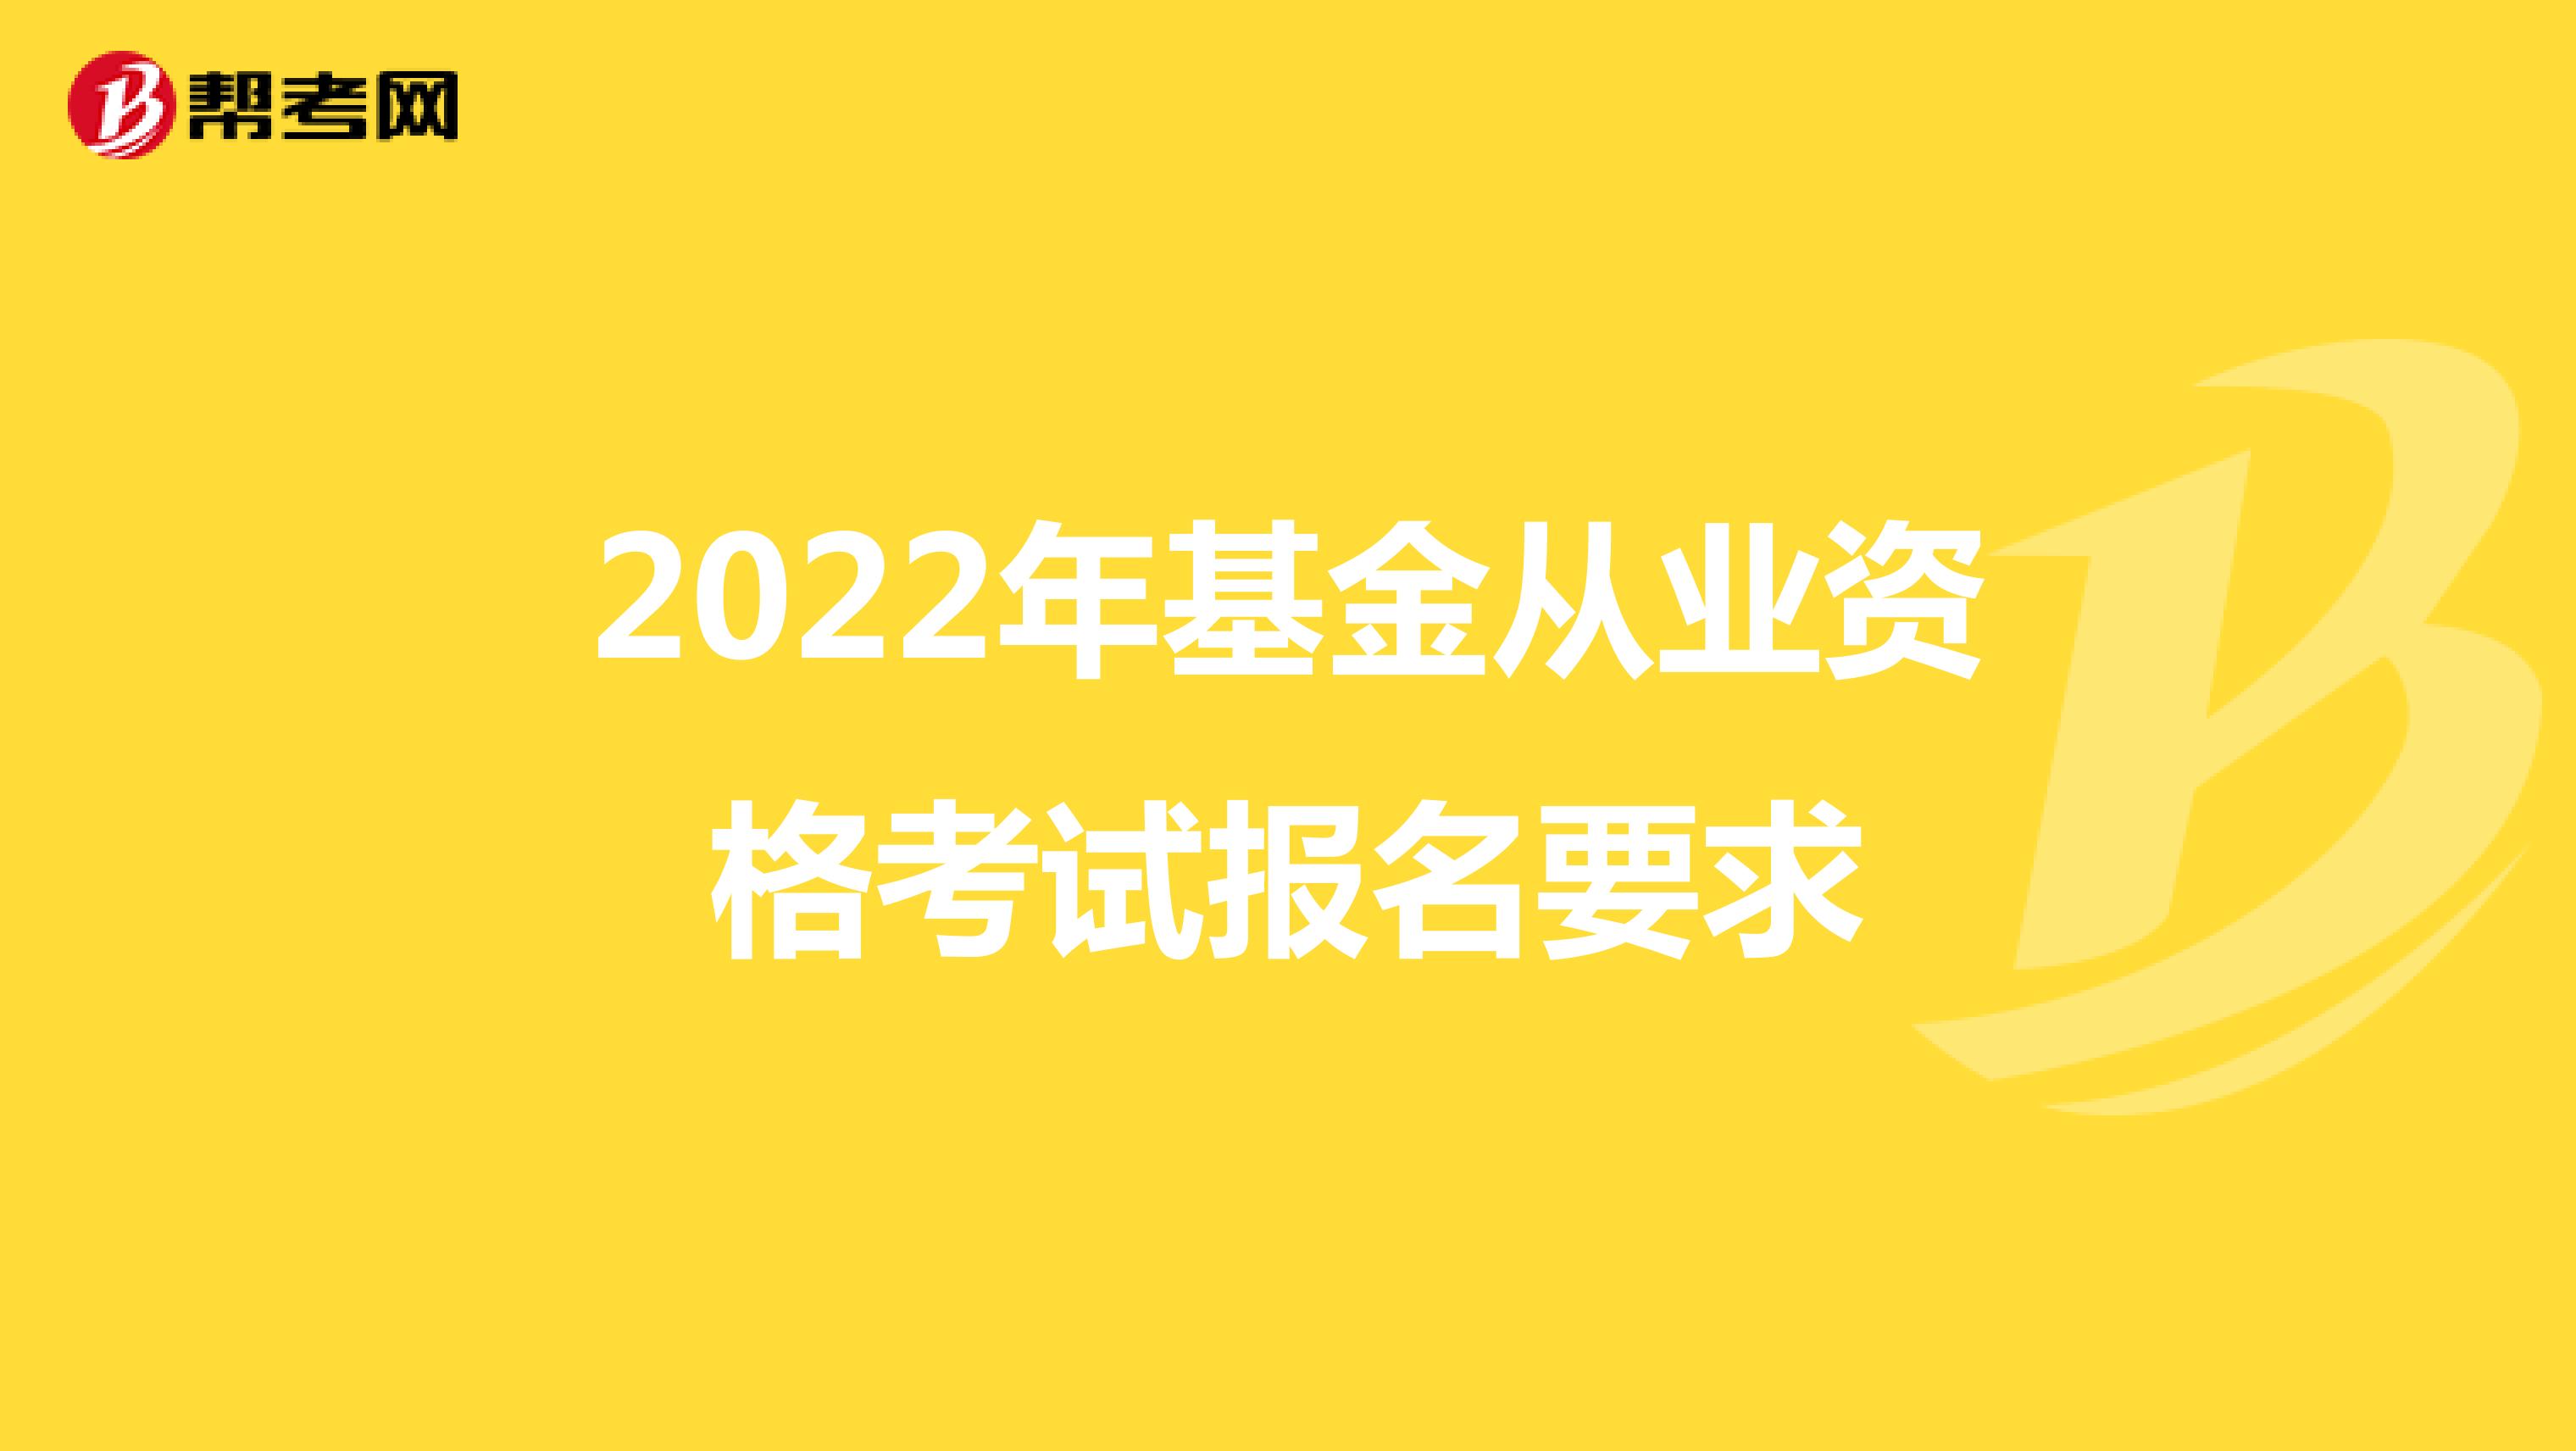 2022年基金从业资格考试报名要求